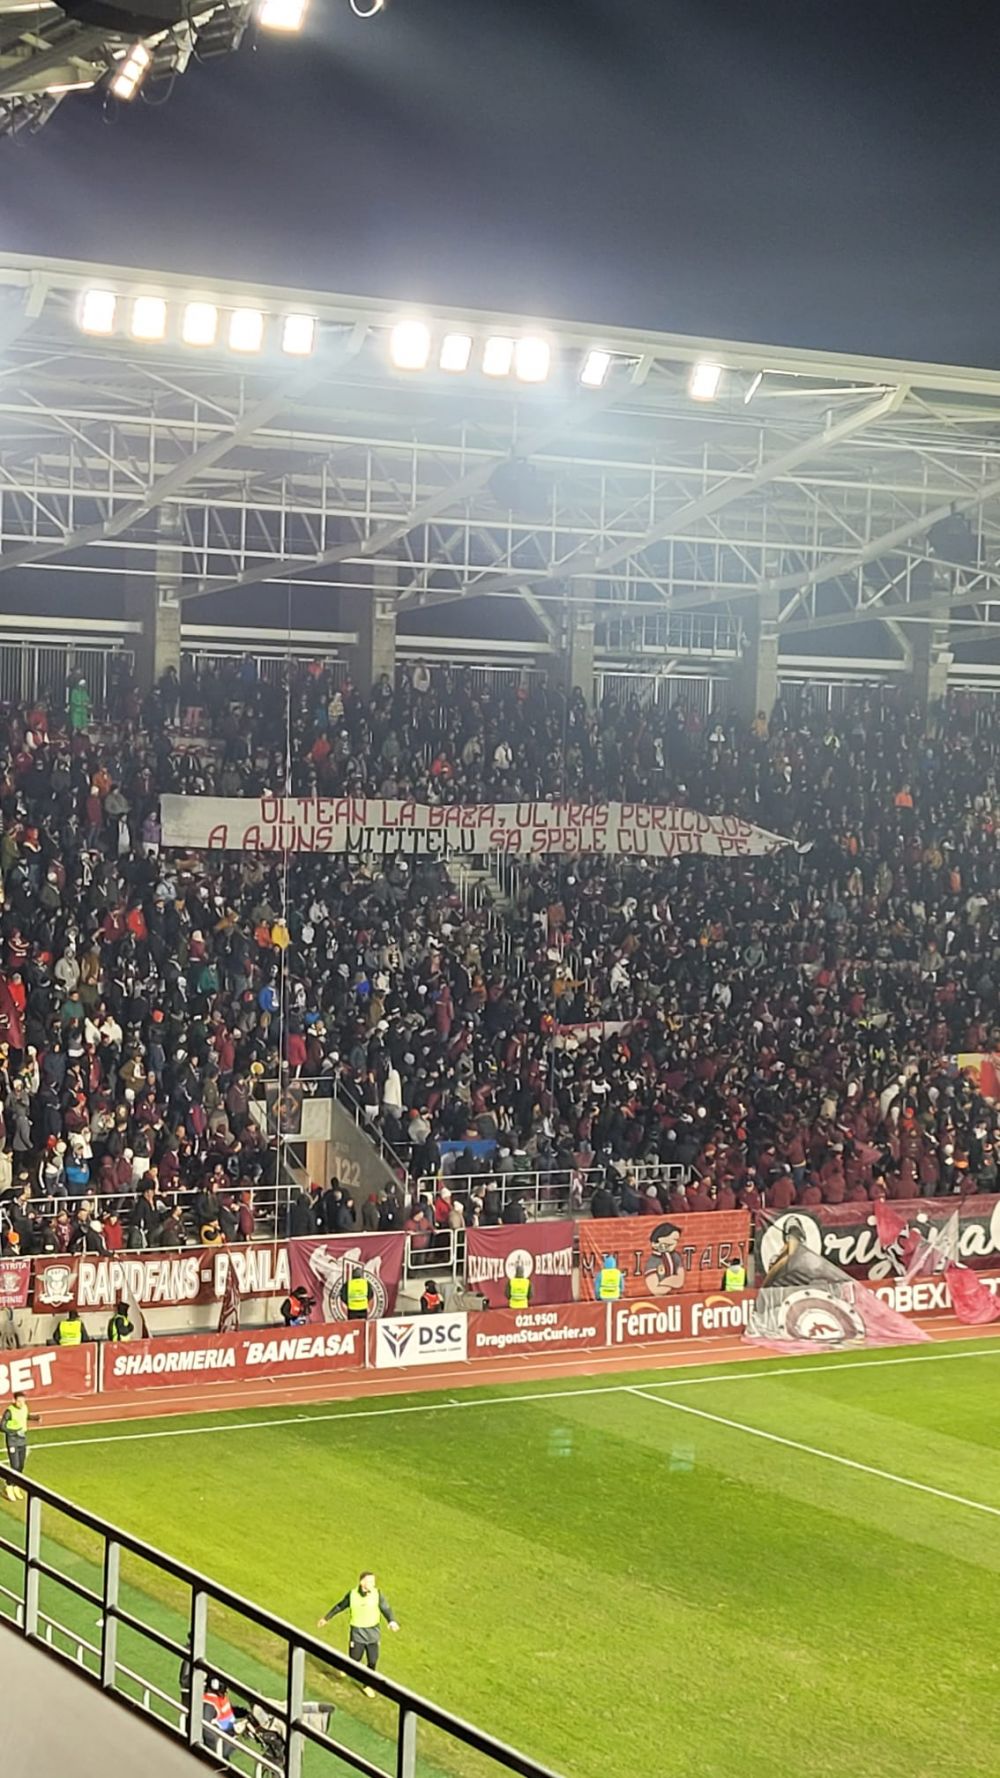 Galeria celor de la Rapid, bannere la foc automat în meciul cu FC U Craiova: "A ajuns Mititelu să spele cu voi pe jos"_3